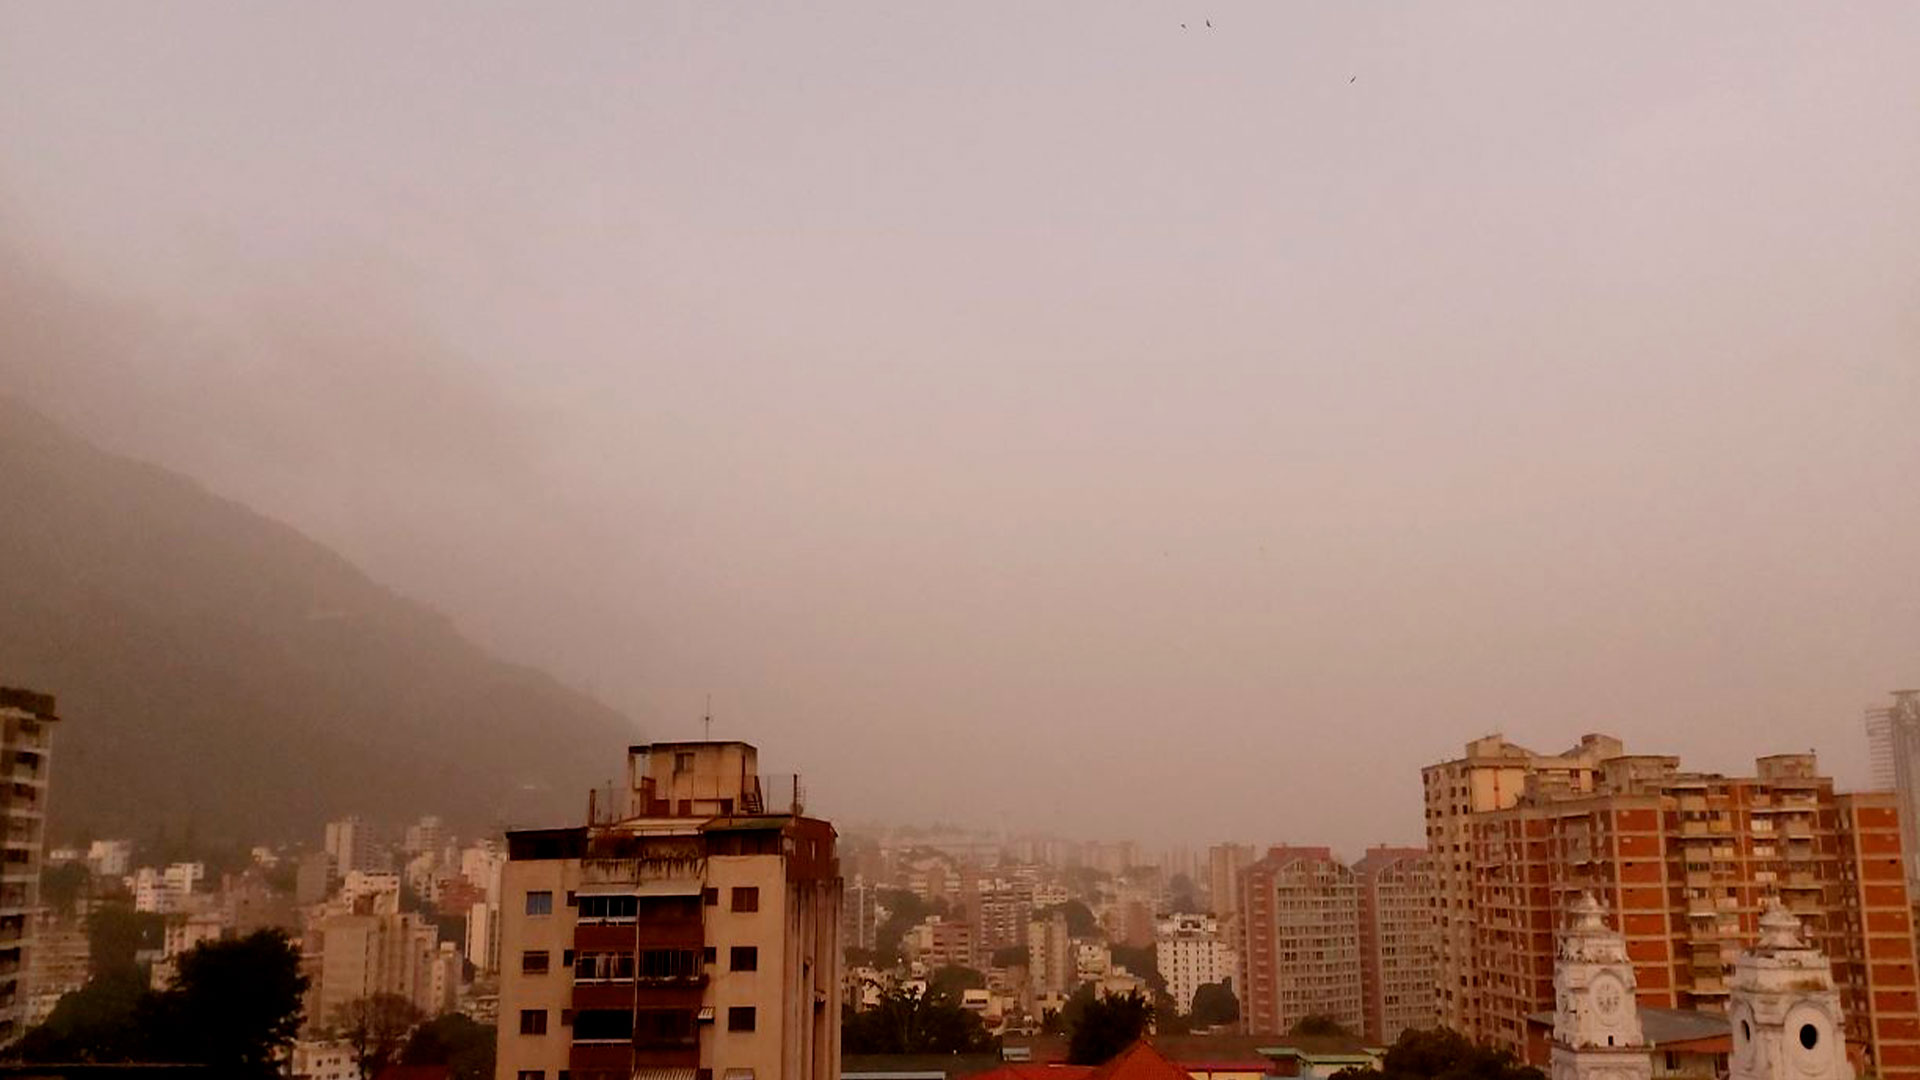 Estas son las zonas afectadas: Densa calima disminuye la calidad del aire en Venezuela, advirtió meteorólogo